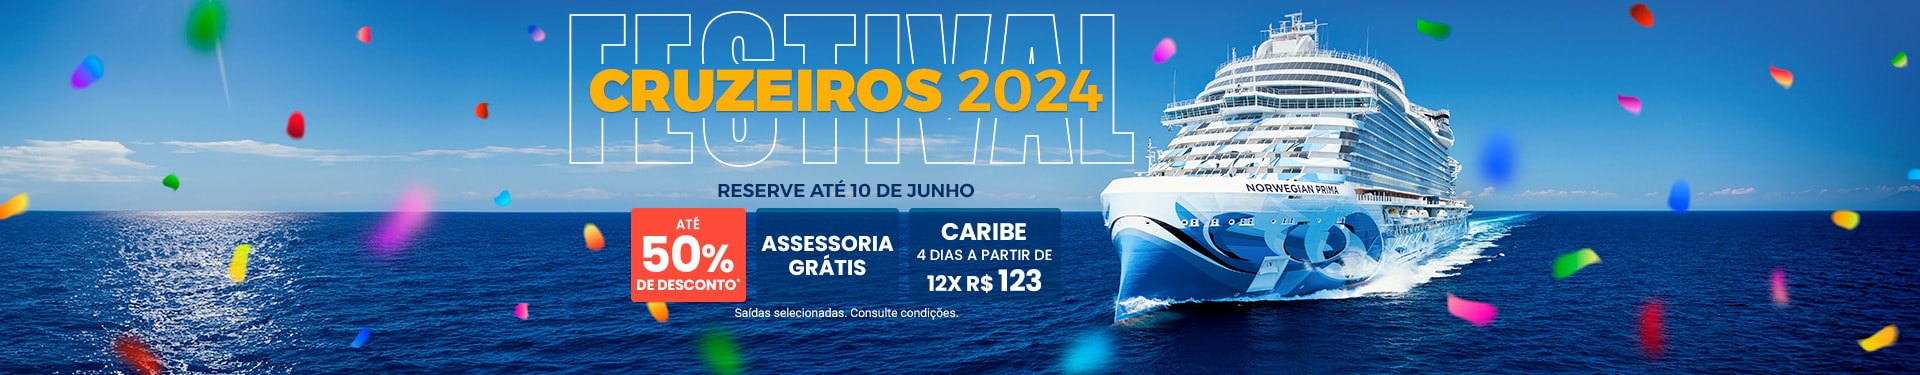 Festival_Cruceros2024_Fase1